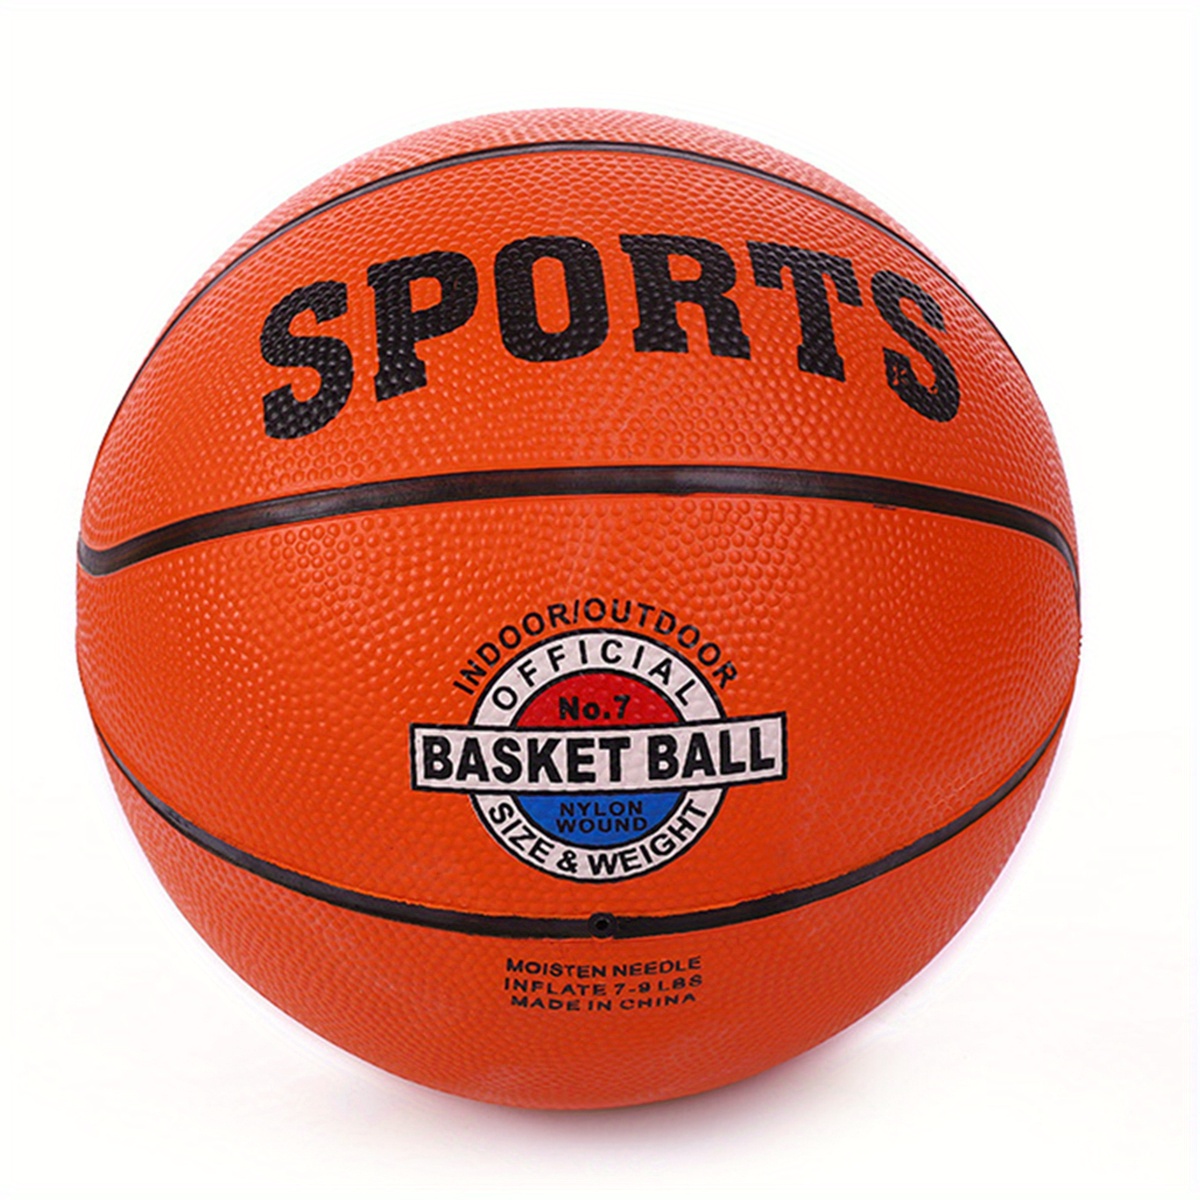 LIVRAISON GRATUITE en ce moment 🚚 Le 1er ballon de basket conçu